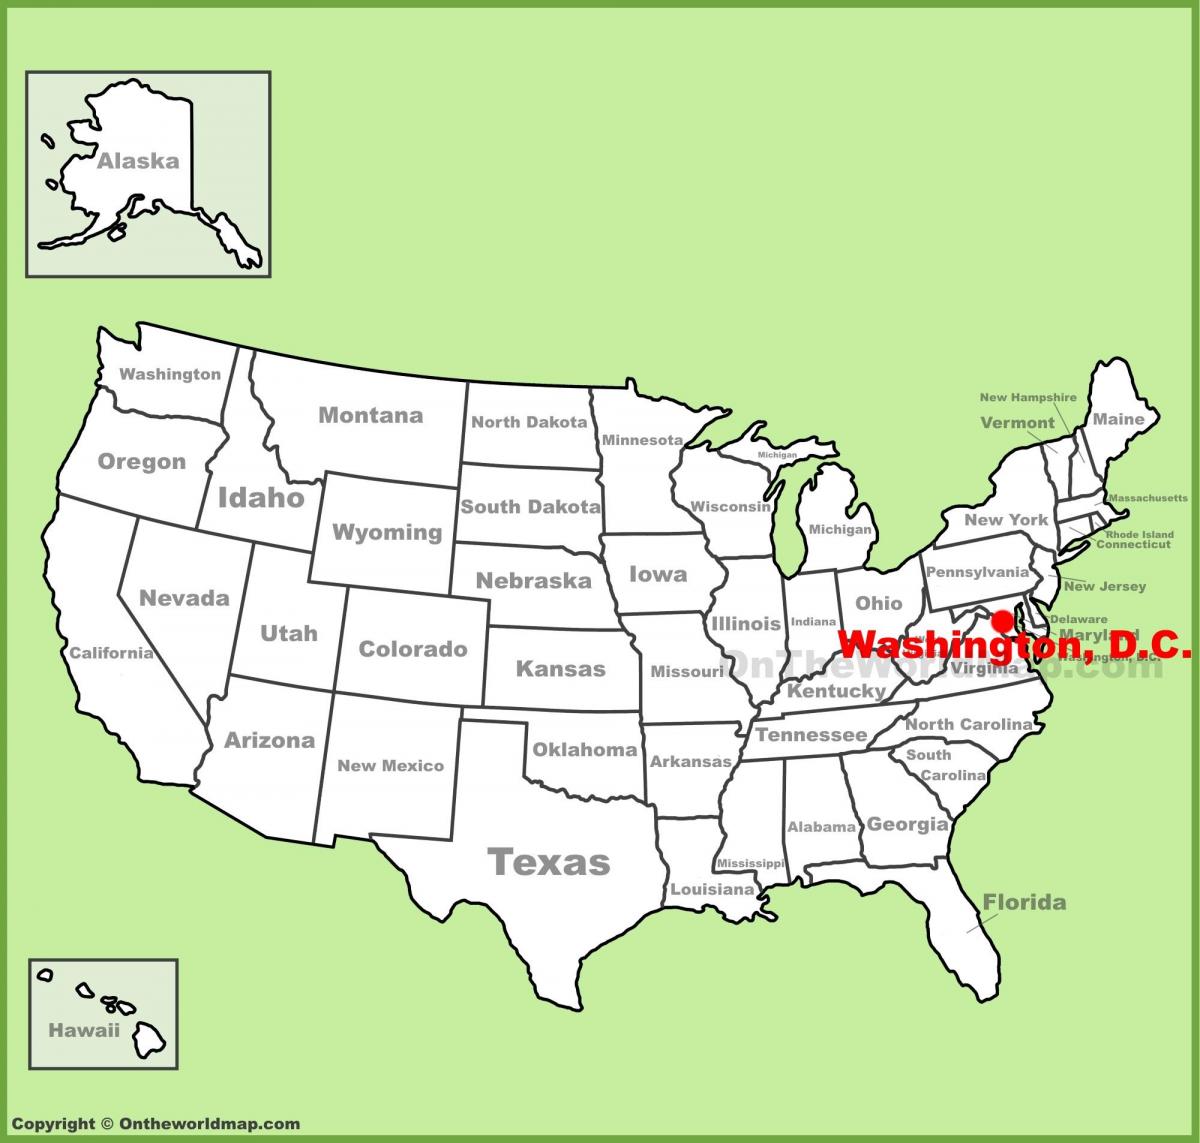 ουάσινγκτον dc ηνωμένες πολιτείες, που βρίσκεται χάρτης